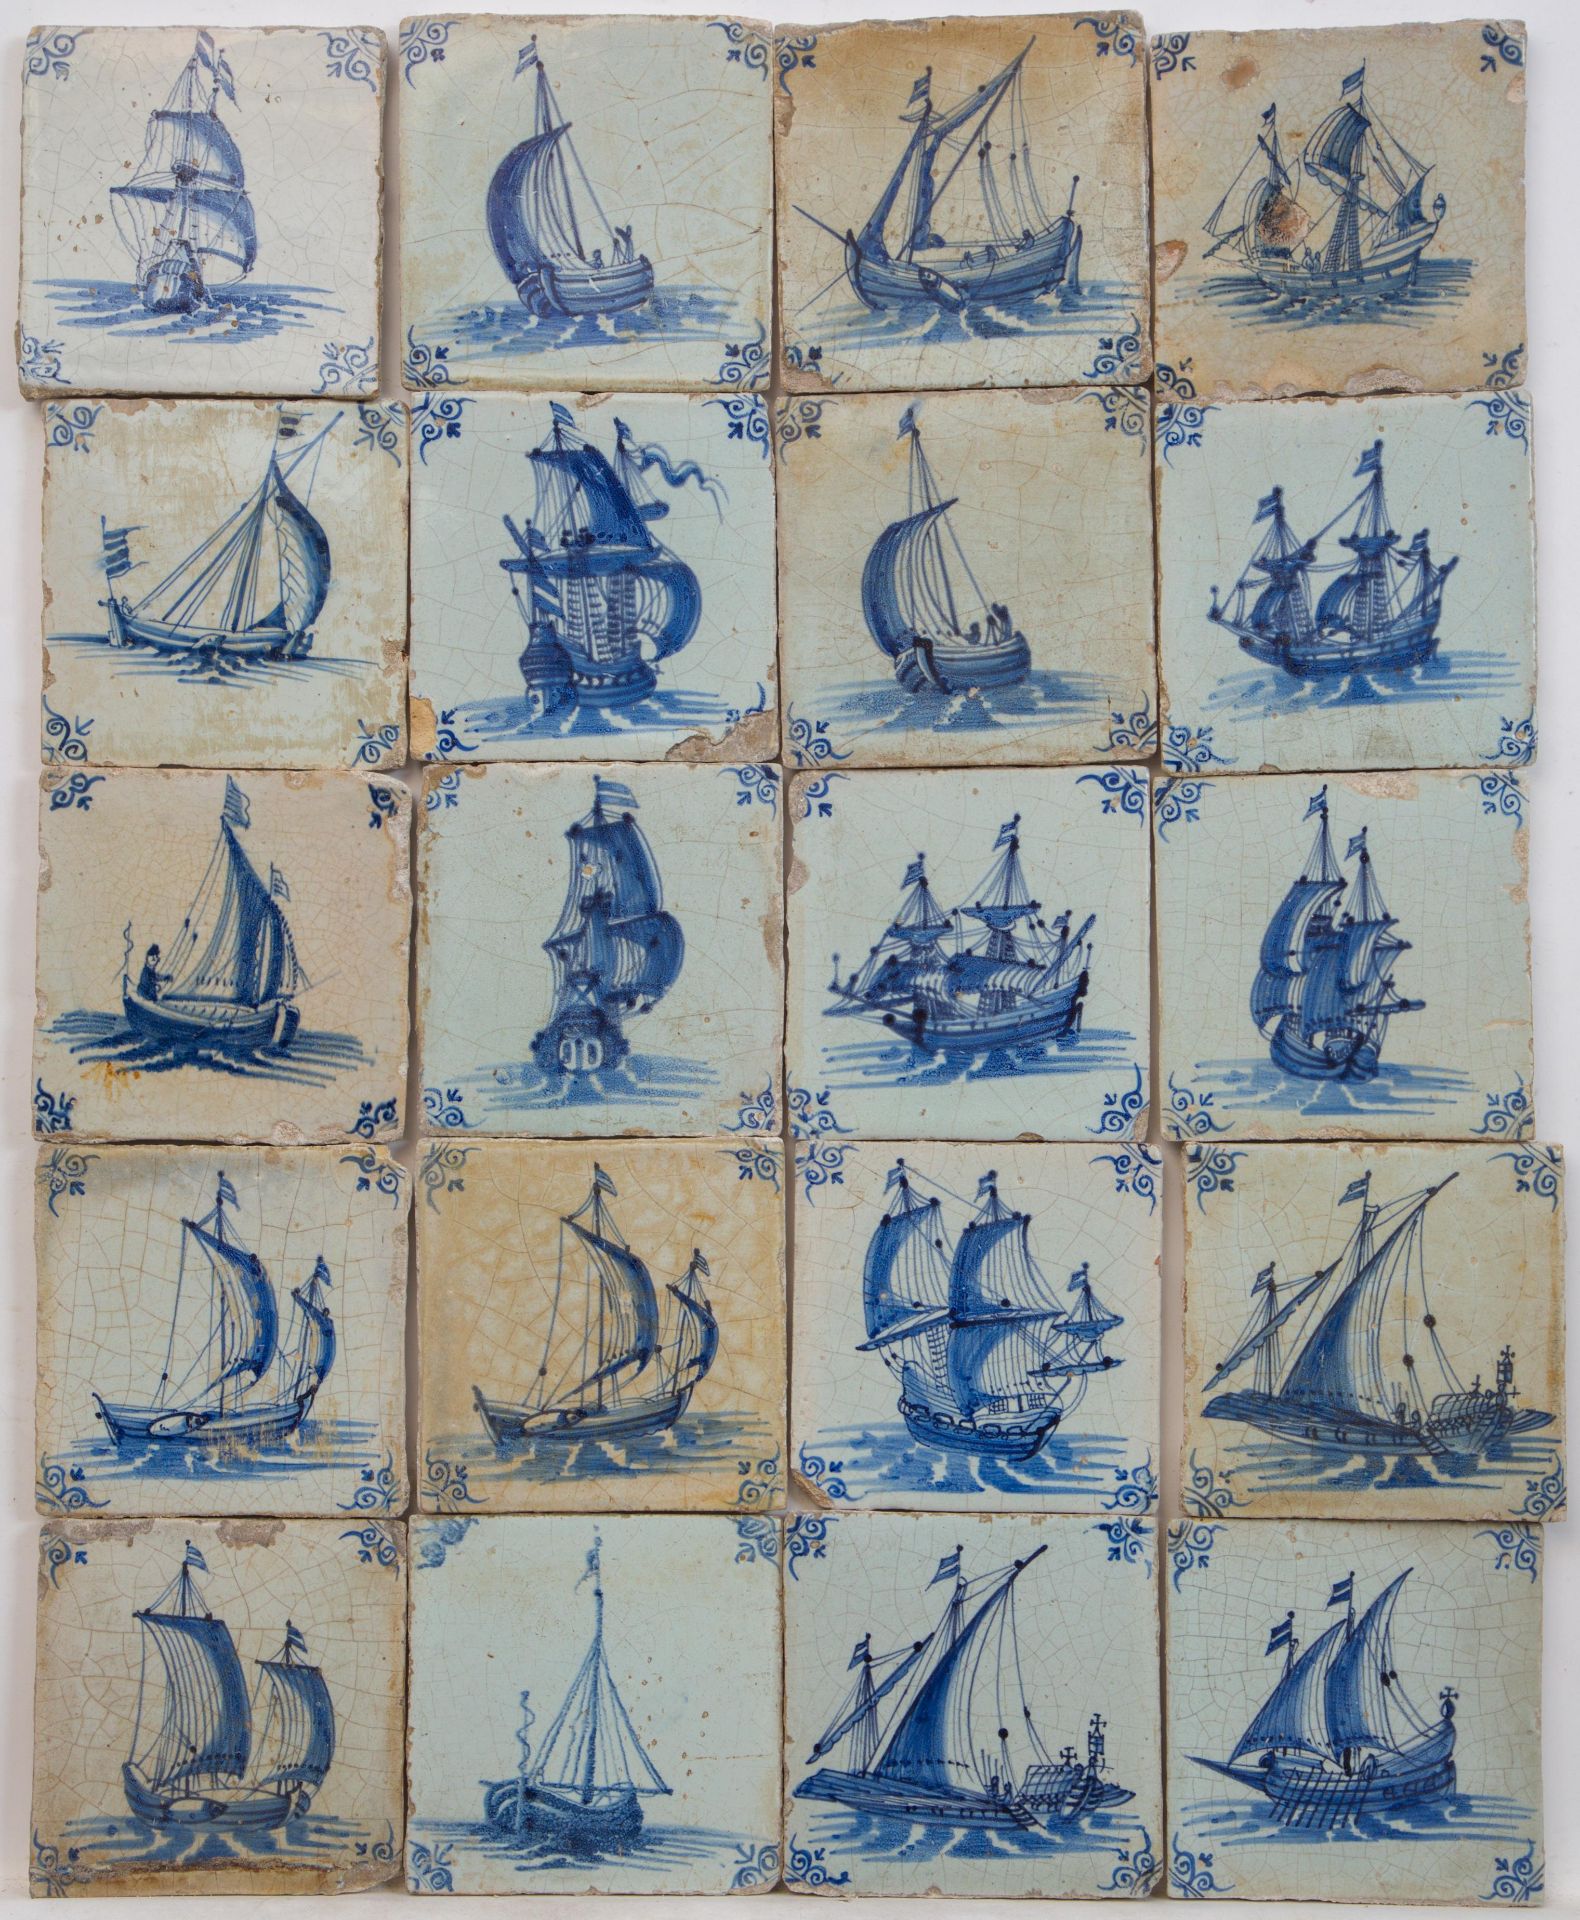 Twintig blauw aardewerk tafereeltegels, tweede helft zeventiende eeuw;